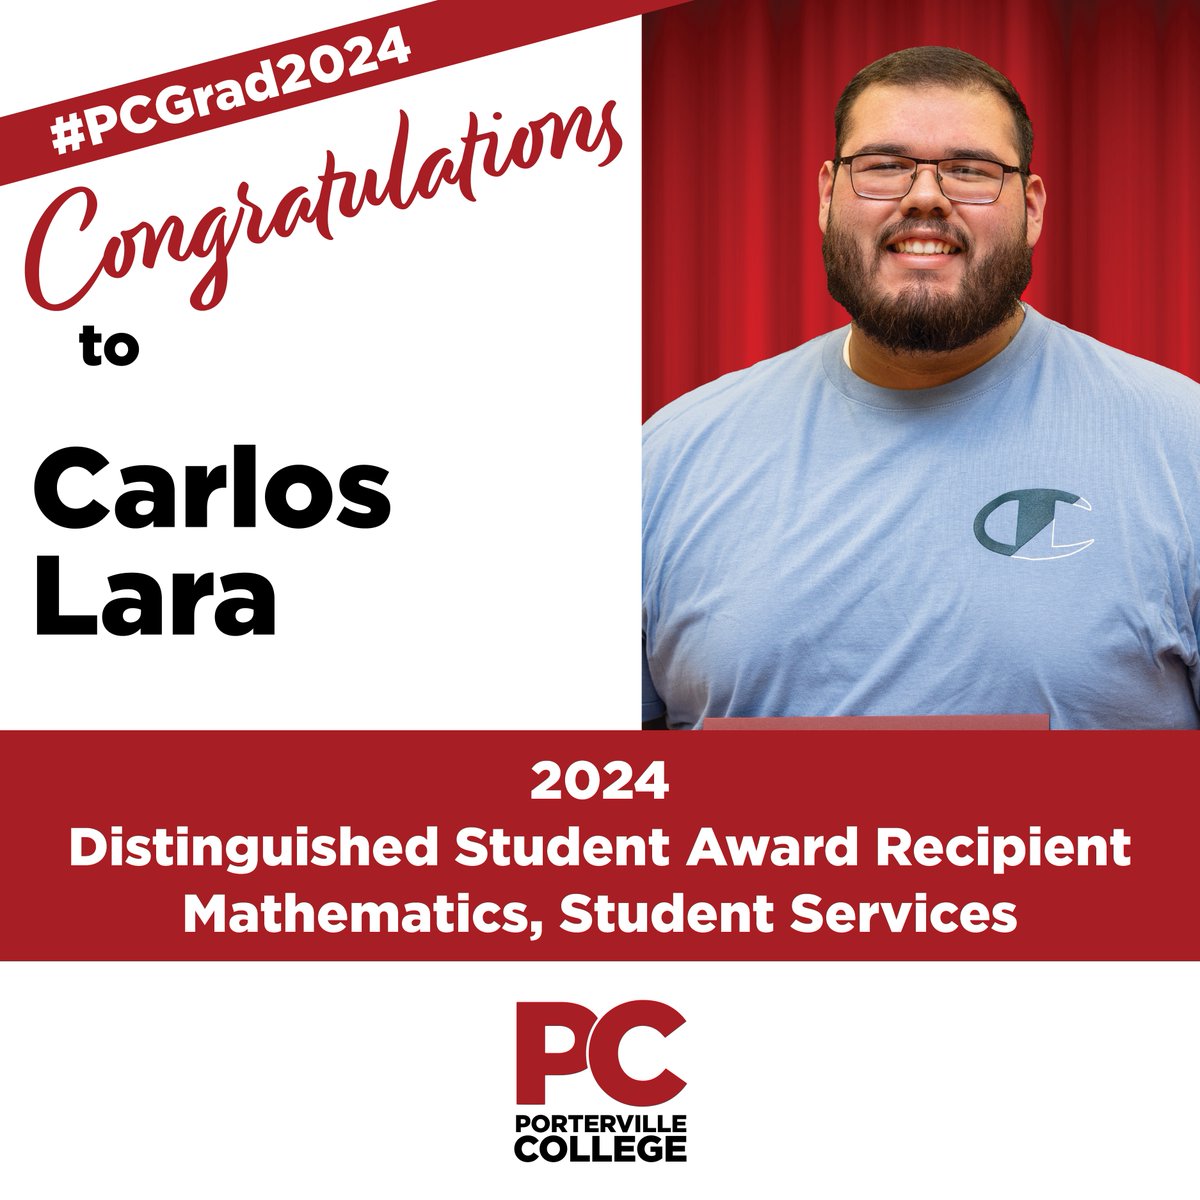 Congratulations to Carlos Lara -- 2024 Distinguished Student Award Recipient in Mathematics, Student Services! #PCGrad2024 #PCStudentSuccess